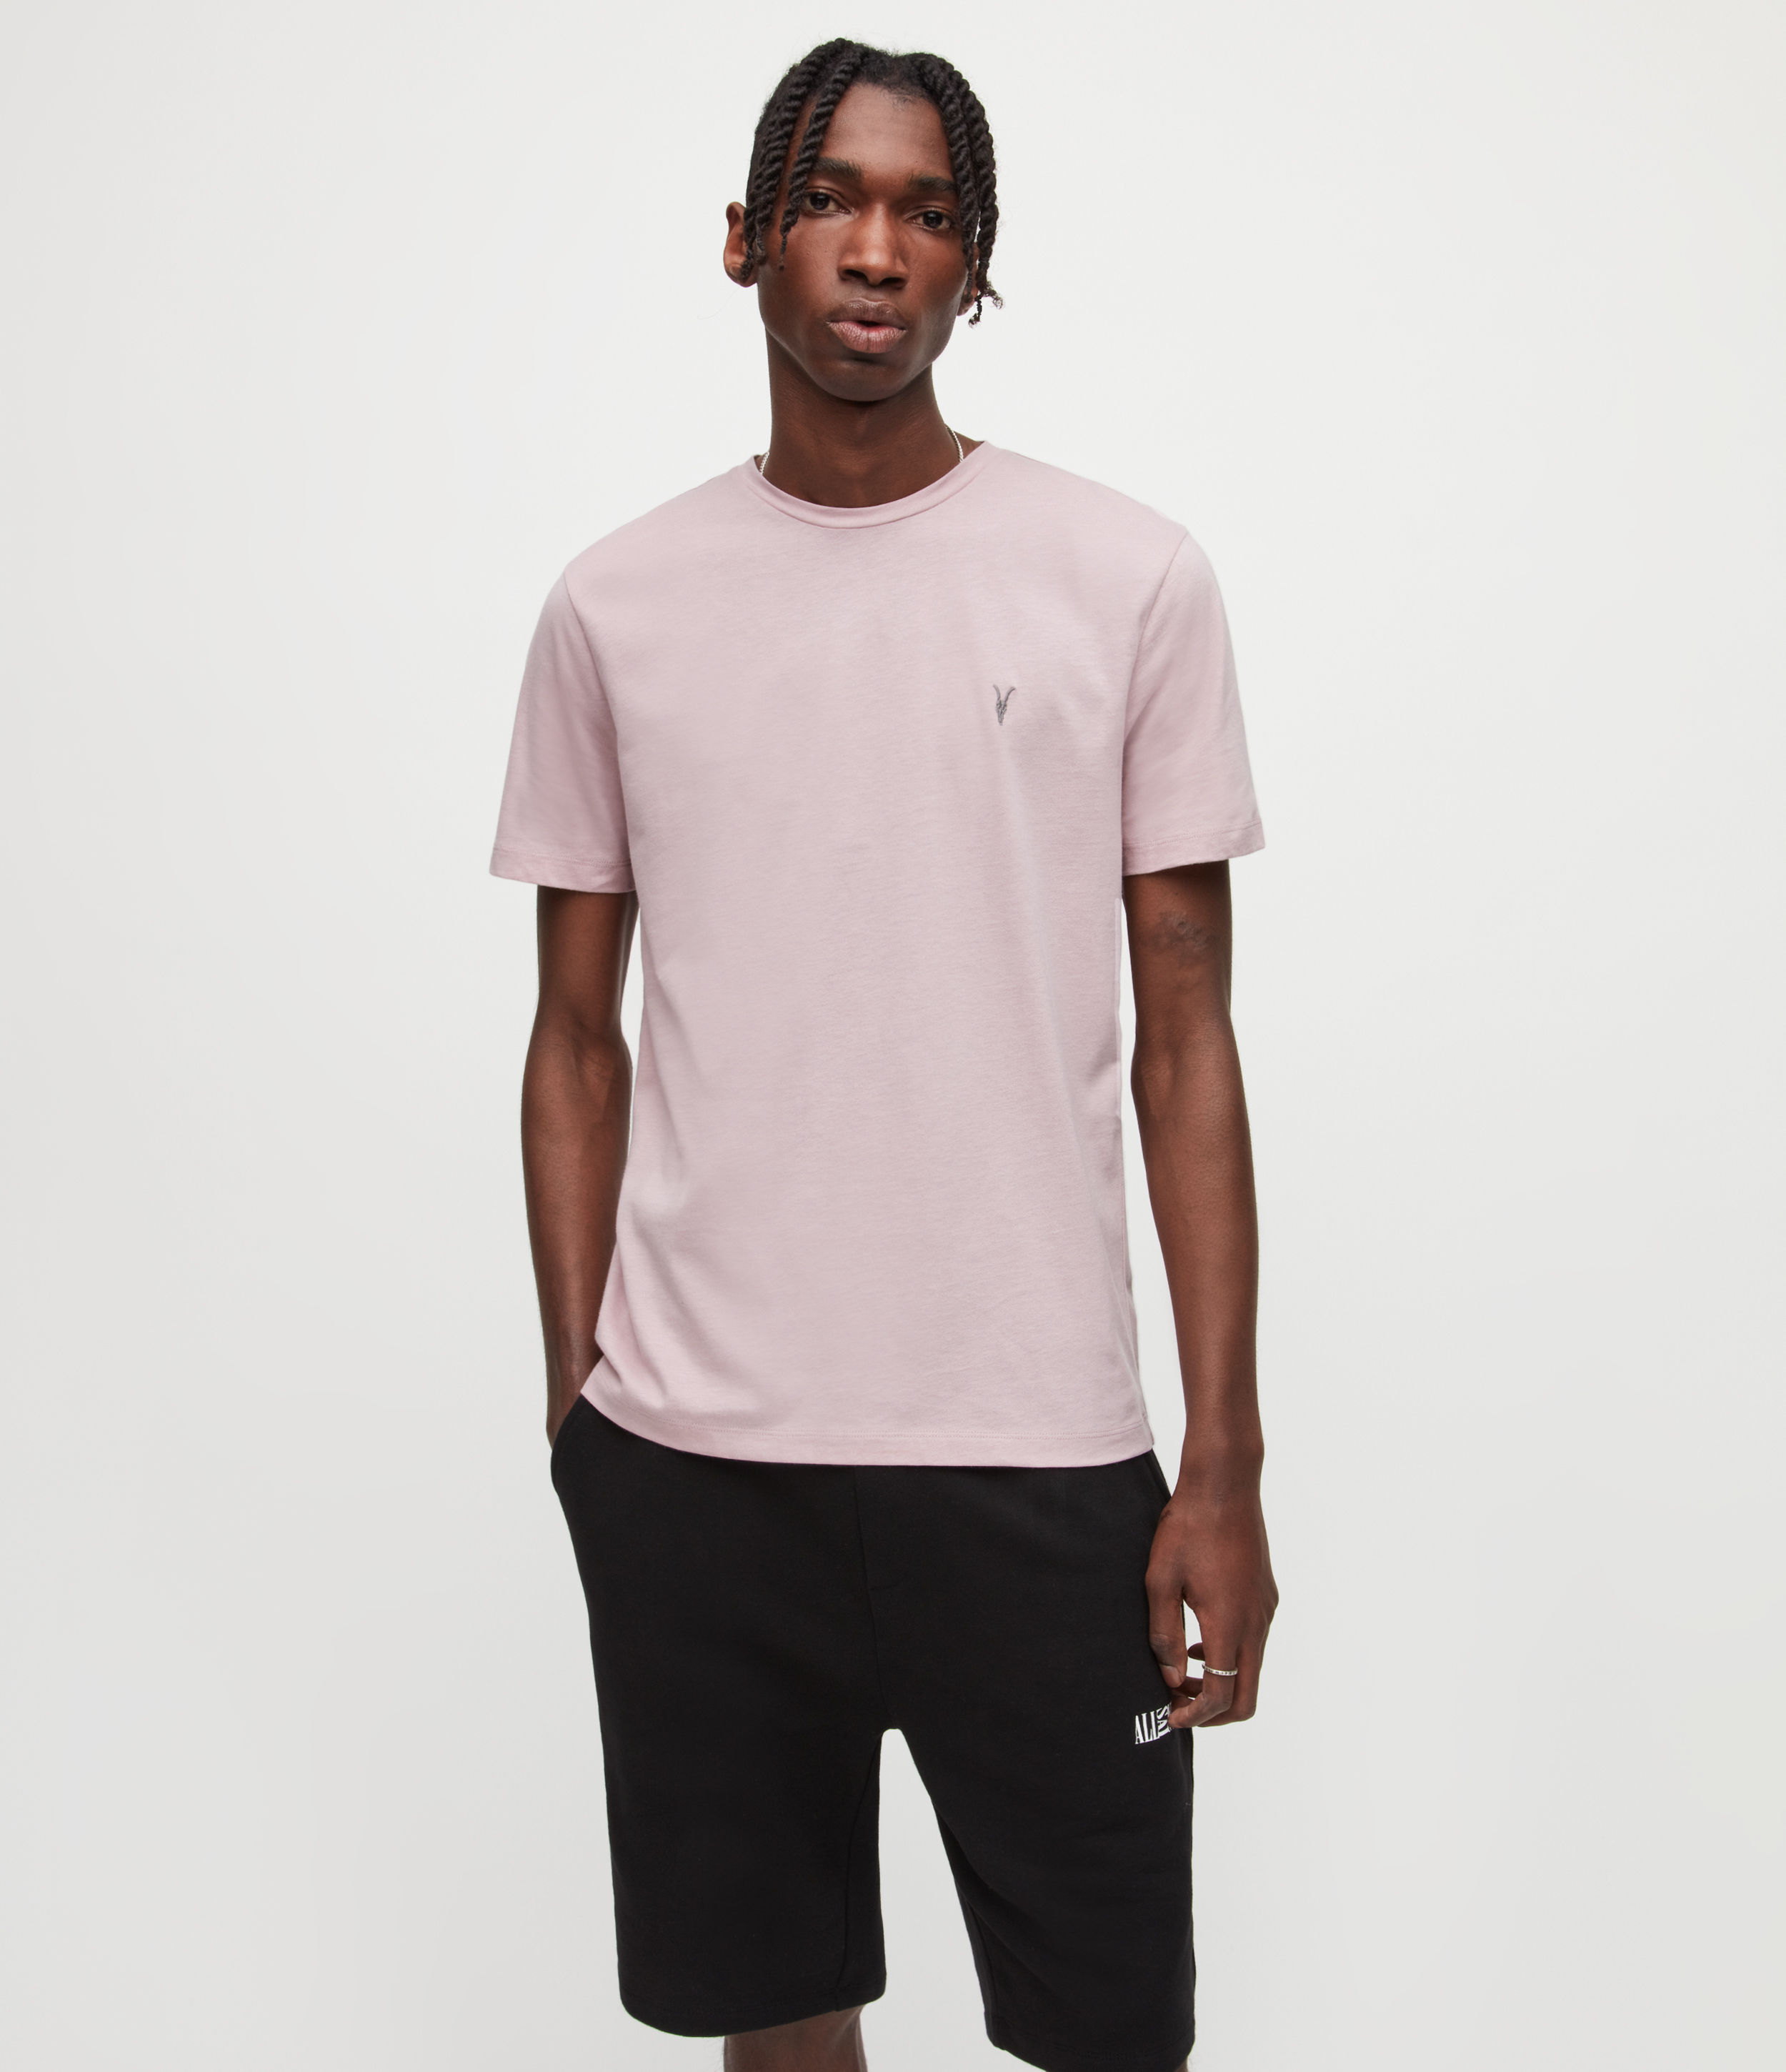 AllSaints Men's Brace Crew T-Shirt, Faded Mauve Pink, Size: L